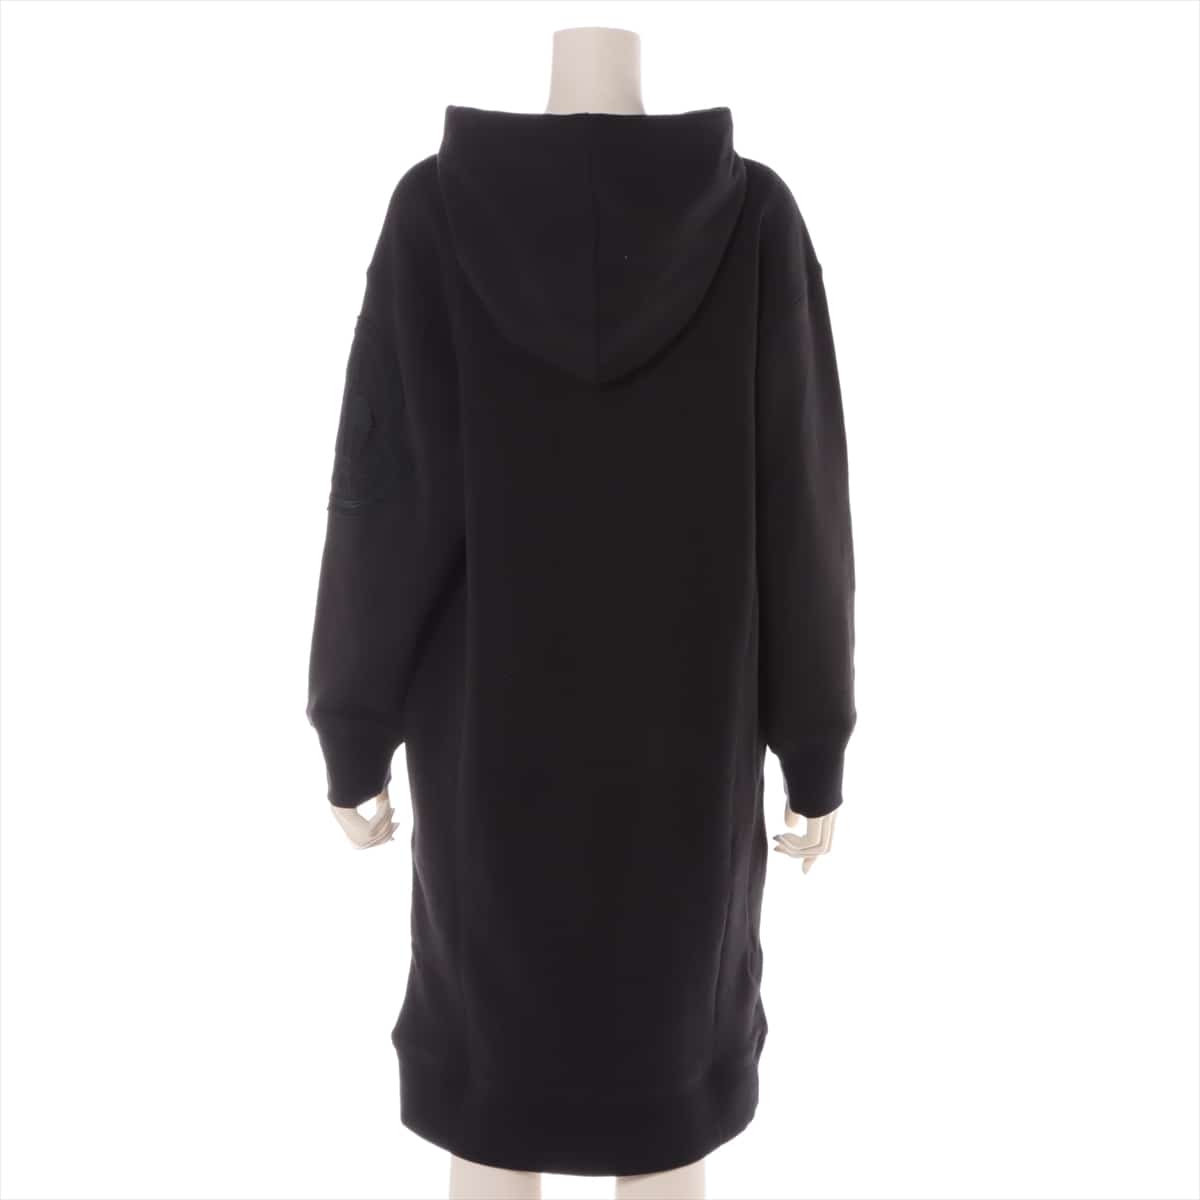 即購入も大歓迎ですモンクレール Hooded Sweatshirt Dress S ブラック